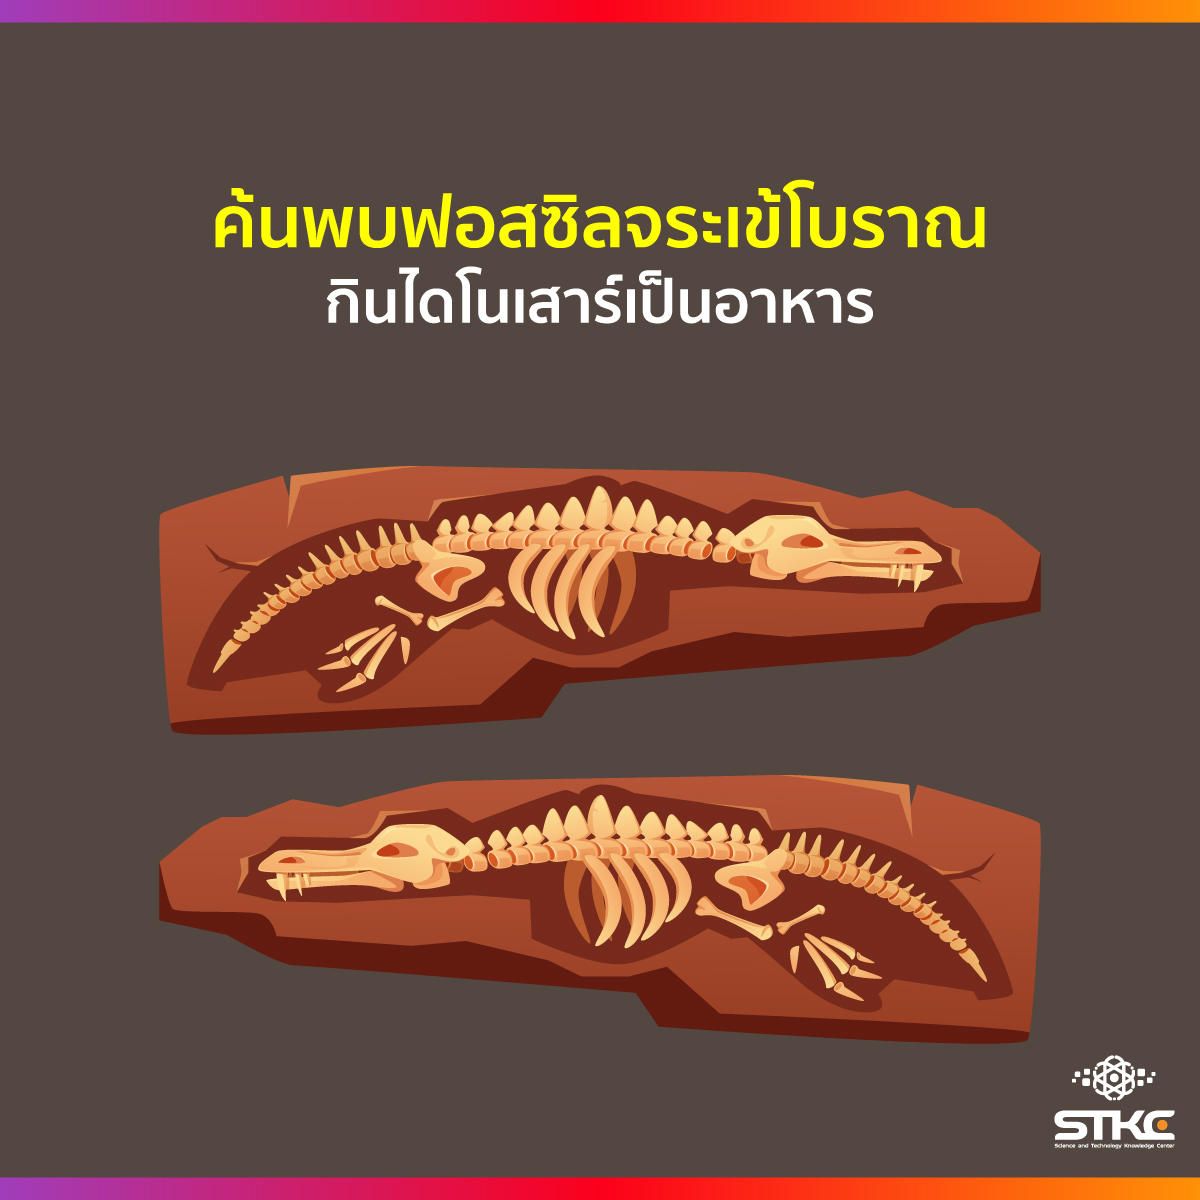 ค้นพบฟอสซิลจระเข้โบราณ กินไดโนเสาร์เป็นอาหาร